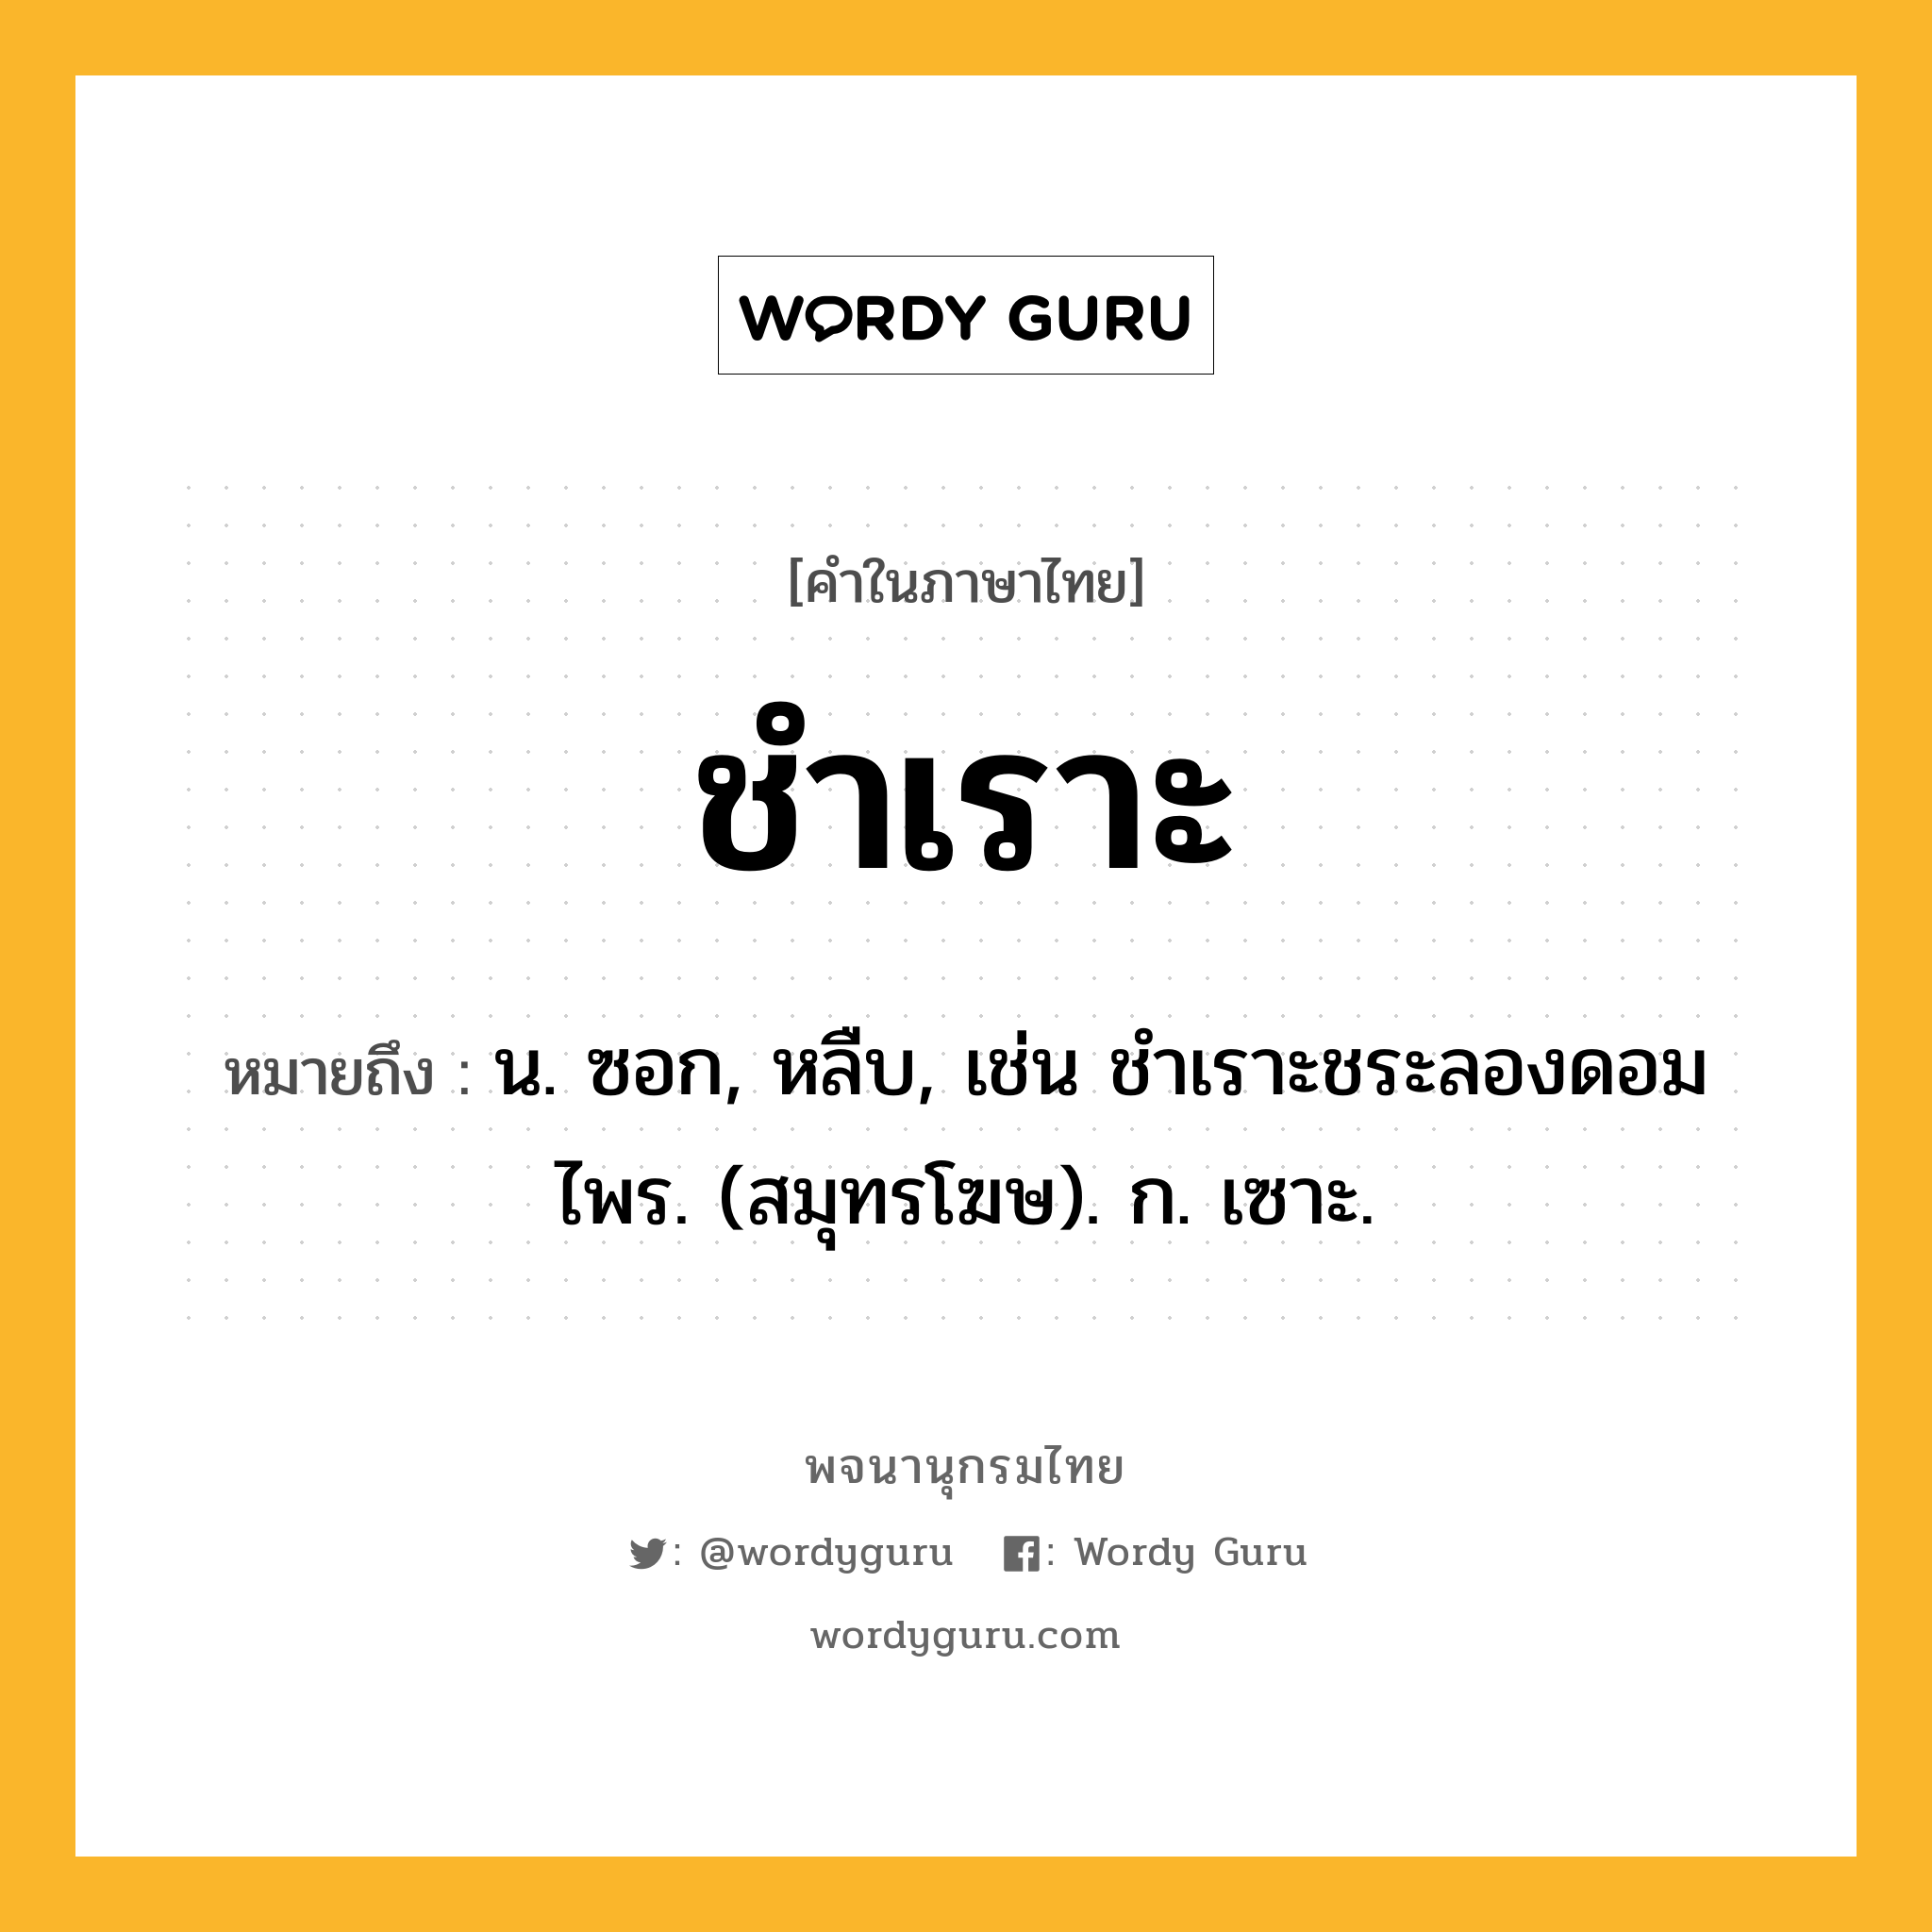 ชำเราะ ความหมาย หมายถึงอะไร?, คำในภาษาไทย ชำเราะ หมายถึง น. ซอก, หลืบ, เช่น ชําเราะชระลองดอมไพร. (สมุทรโฆษ). ก. เซาะ.